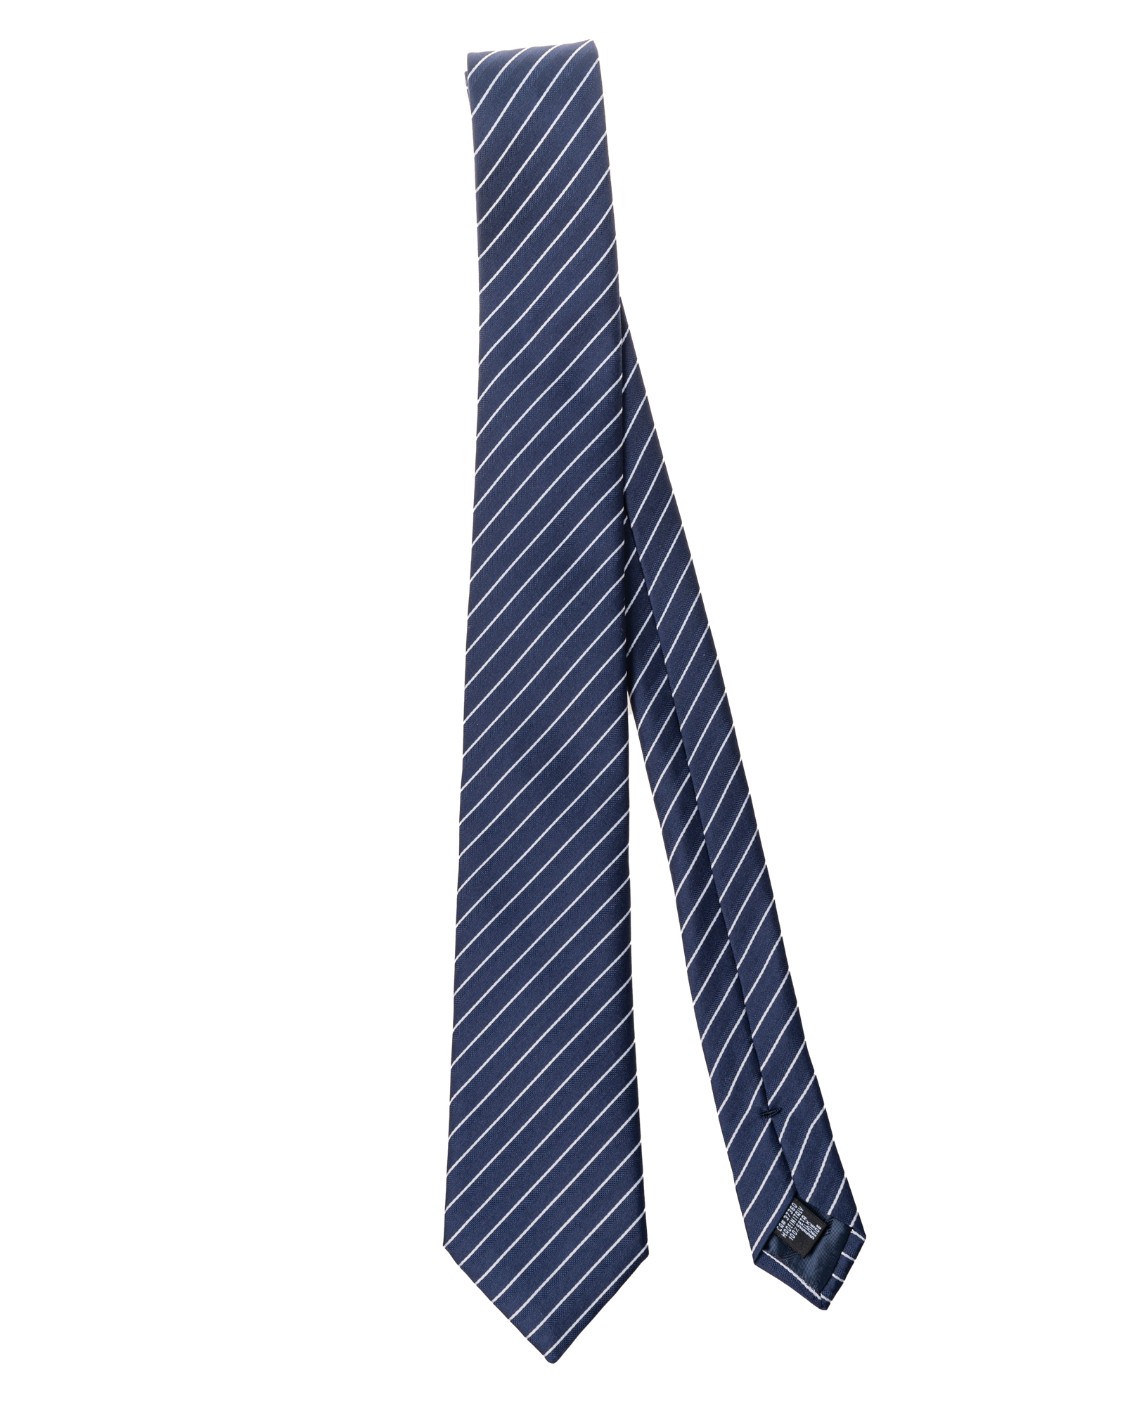 shop EMPORIO ARMANI  Cravatta: Emporio Armani cravatta in seta.
Fantasia.
Composizione: 100% seta.
Made in Italy.. 340275 2R664-00135 number 8532901